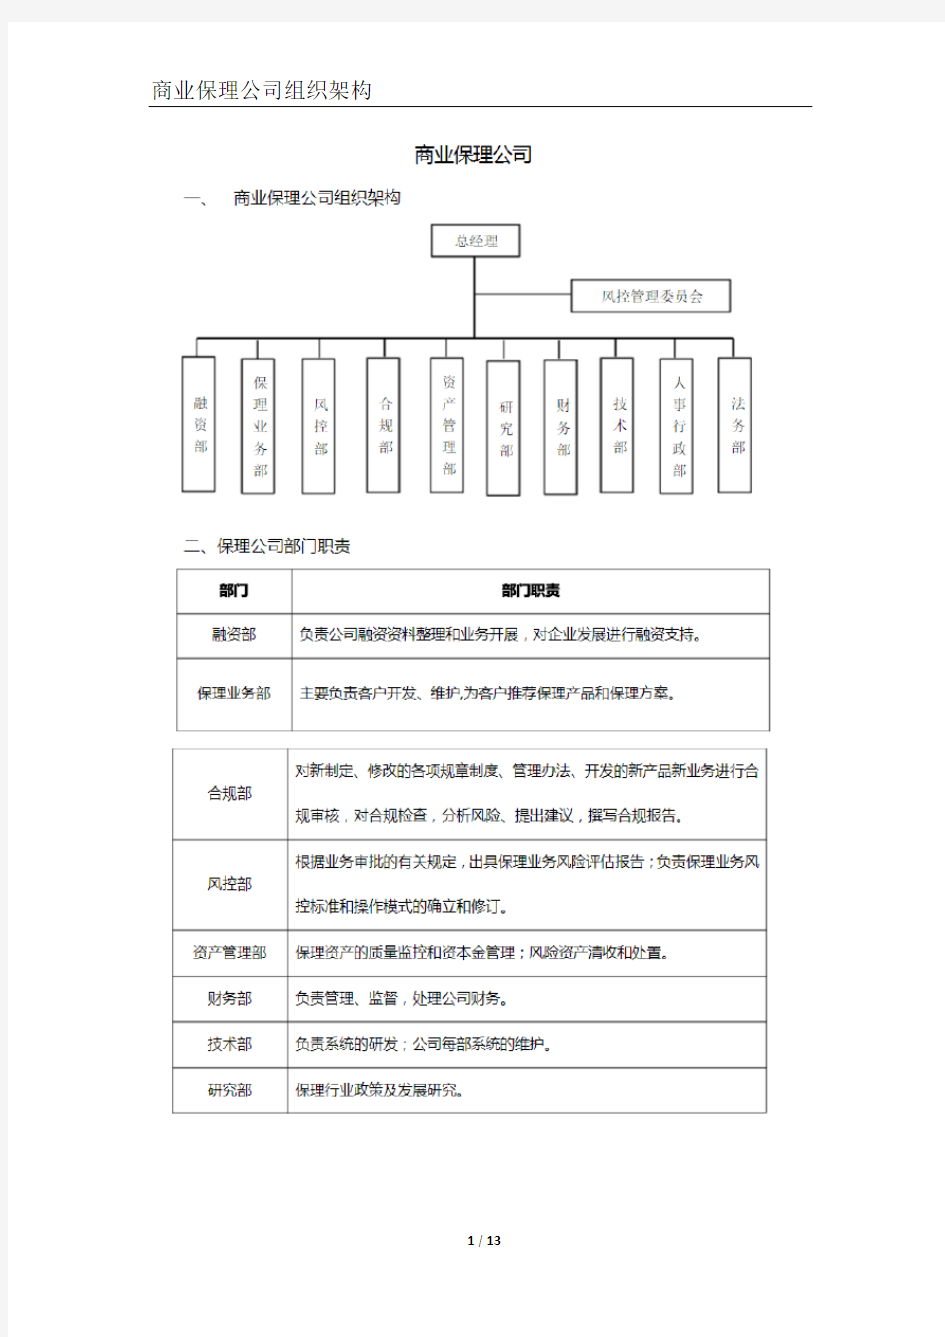 商业保理公司组织架构PDF